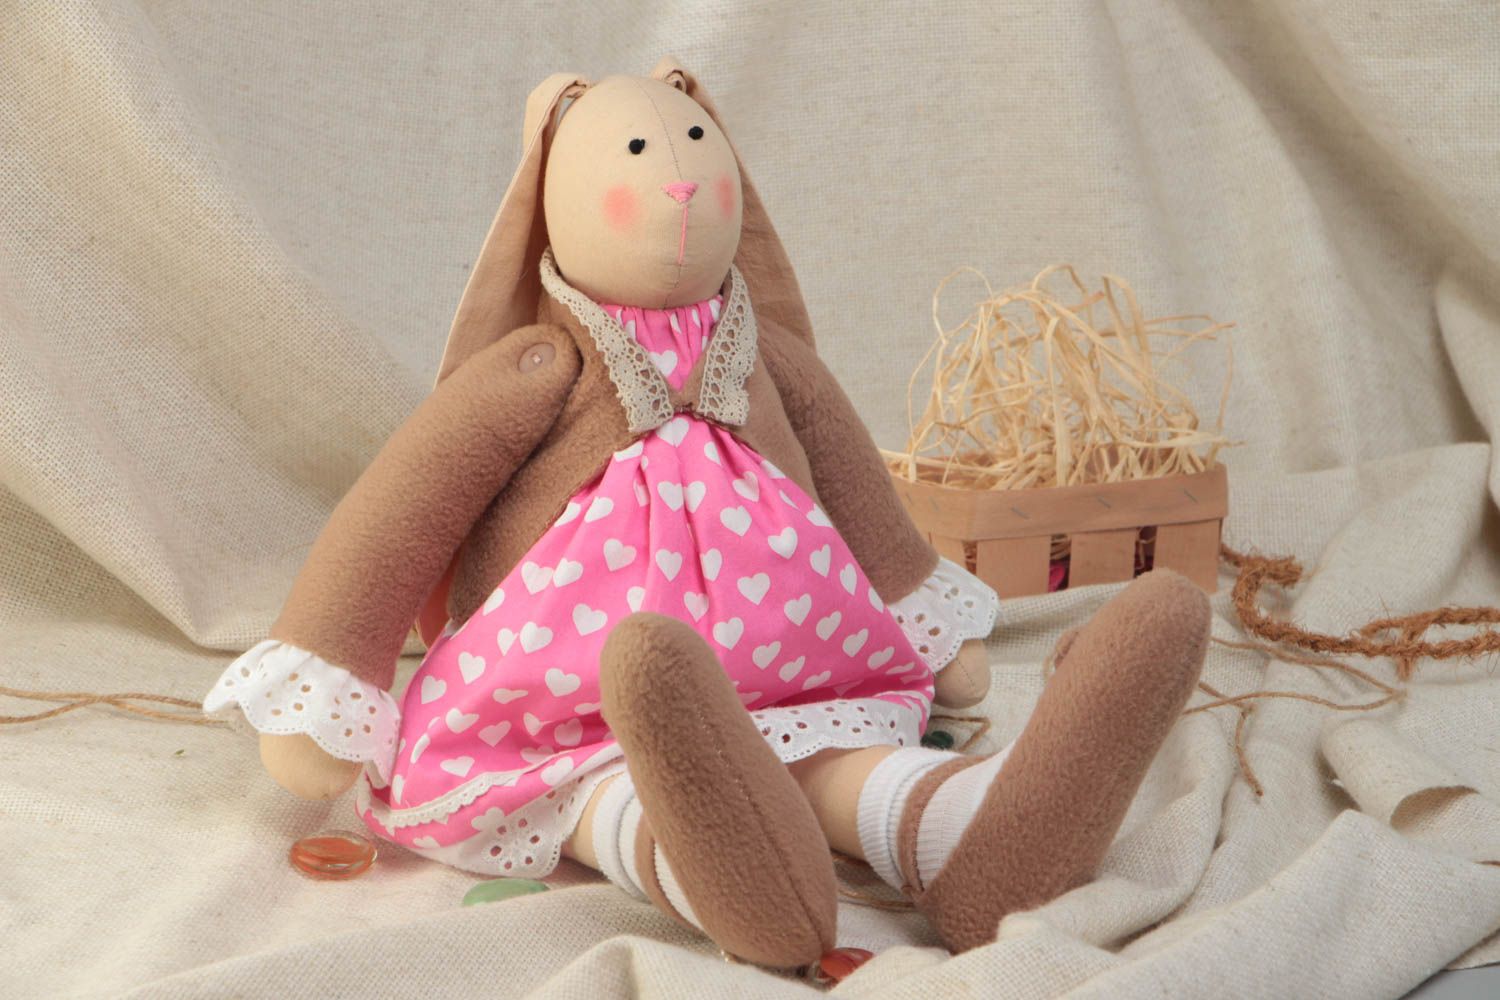 Мягкая игрушка для детей тканевая ручной работы красивая зайка в платье фото 1